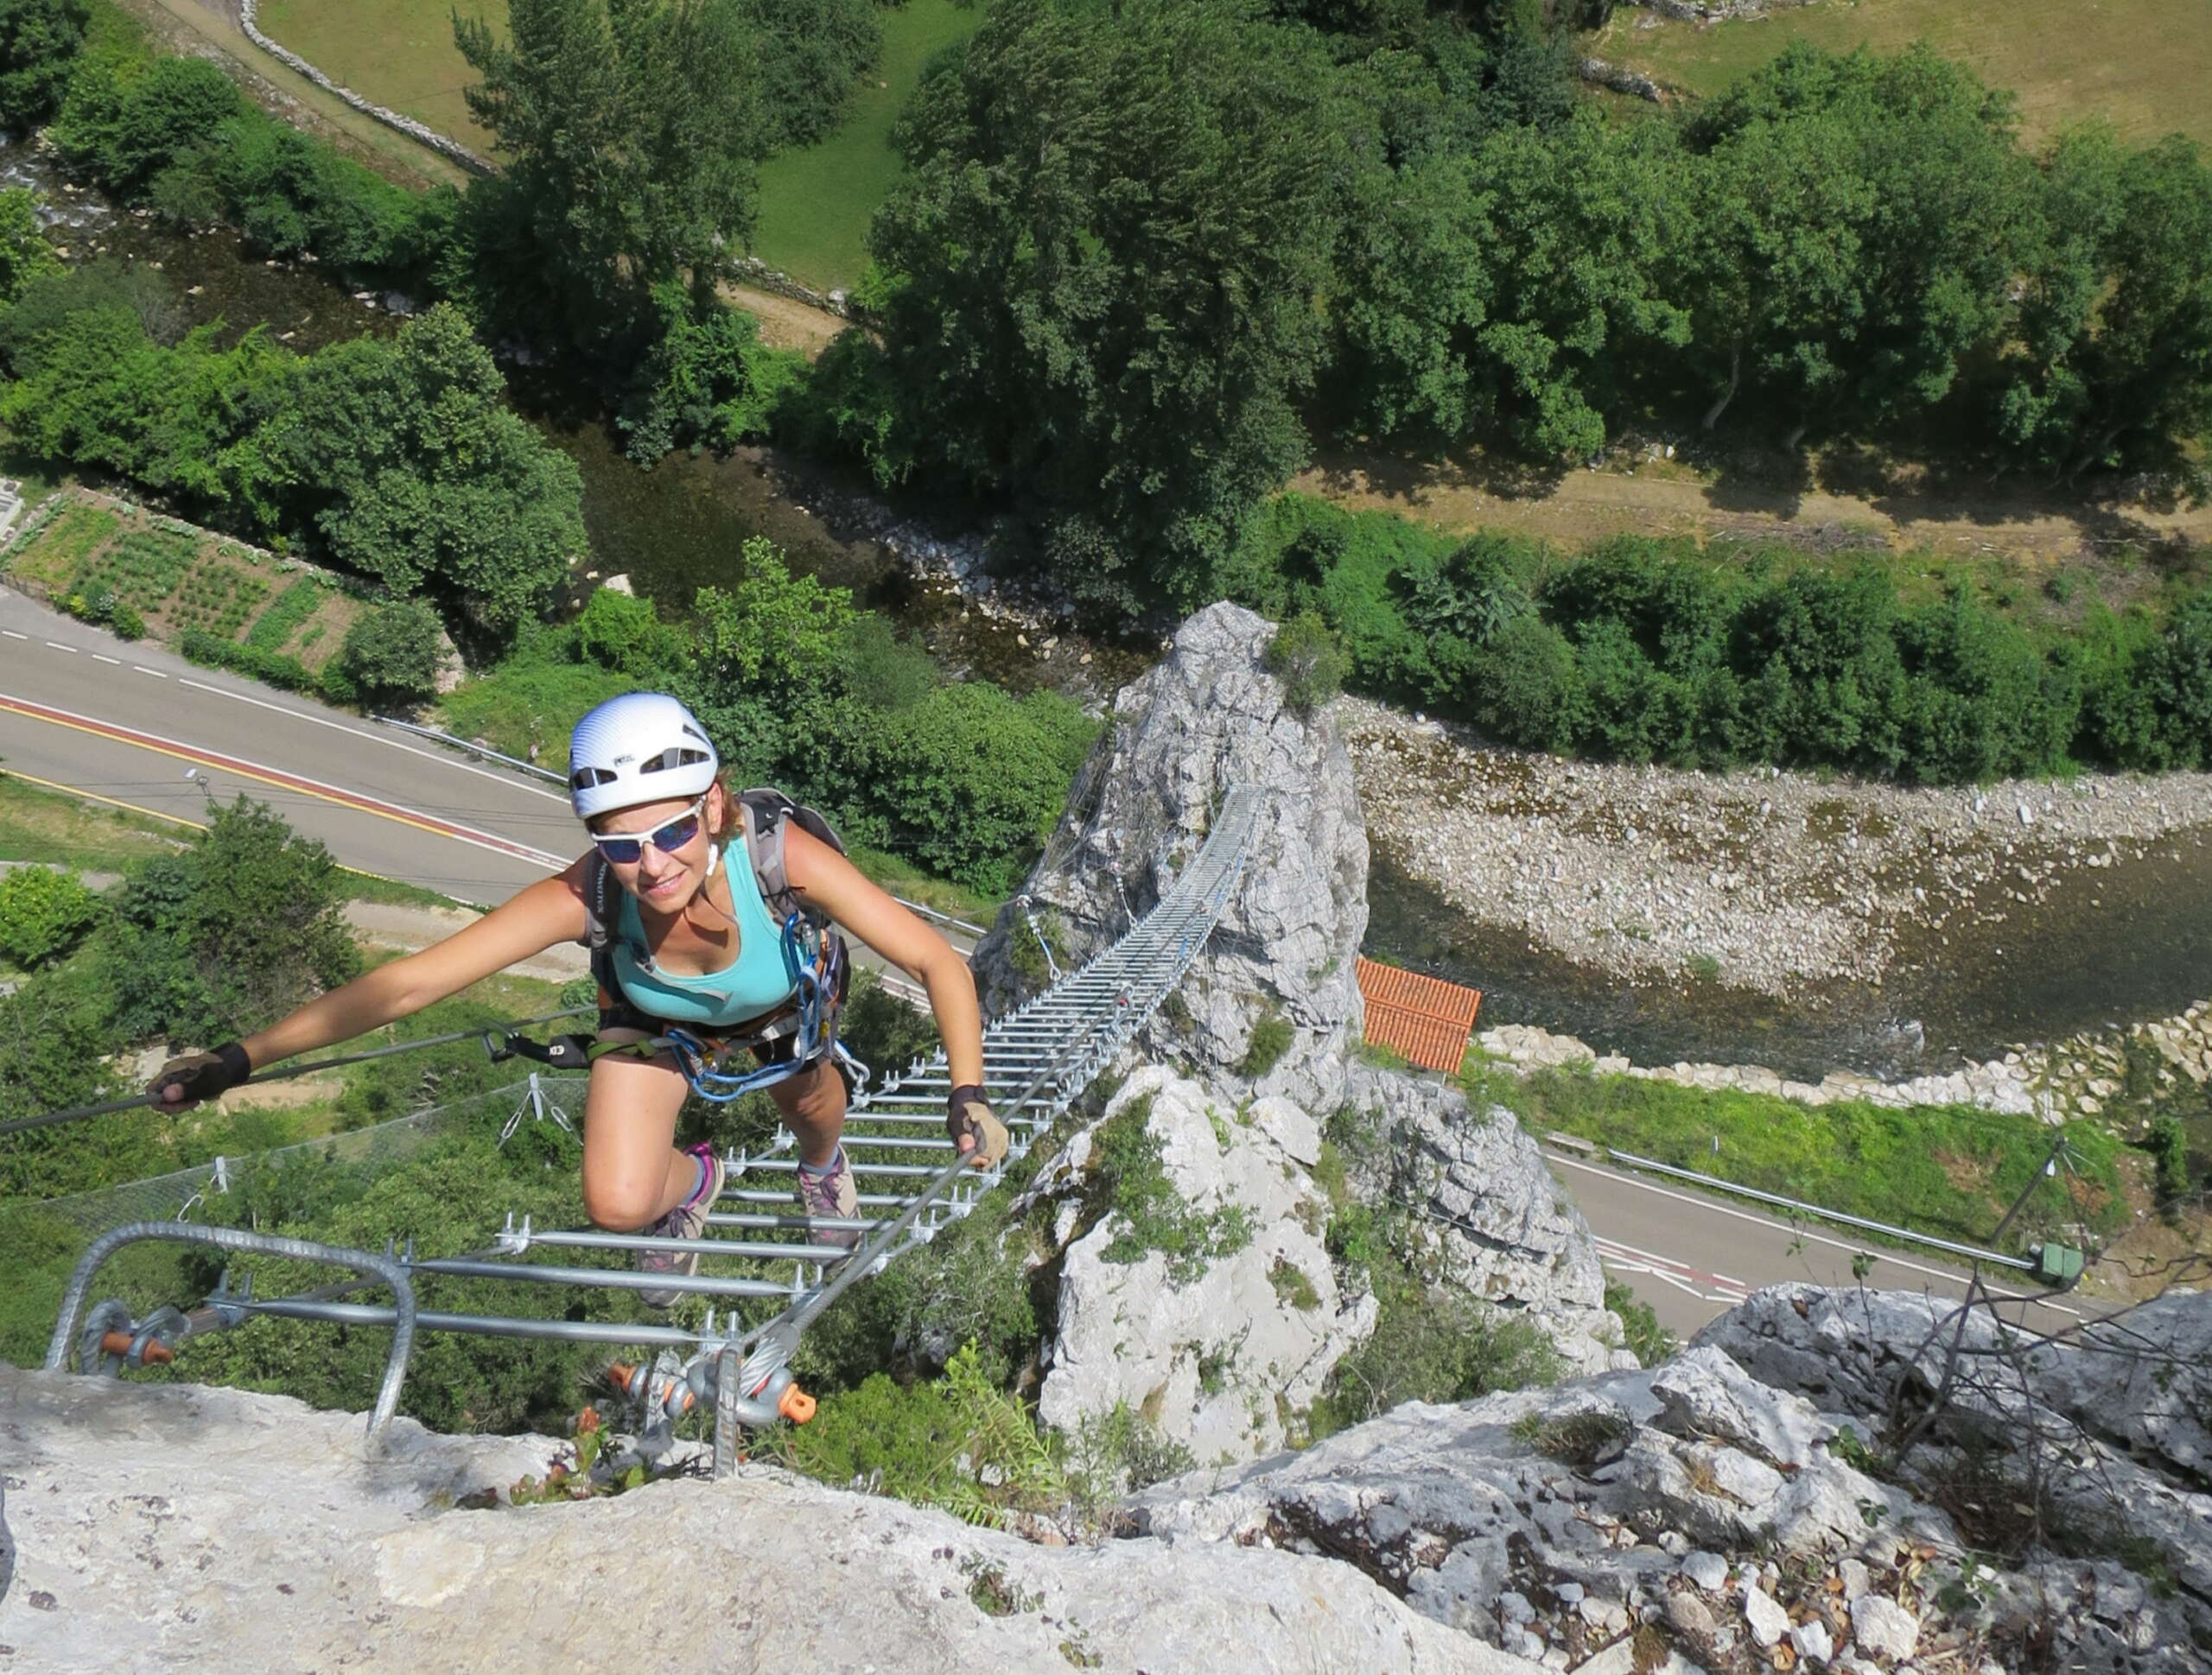 Ferrata Escalera al cielo en La Hermida (Cantabria), entre rocas, es aérea y se mueve la escalera metálica que produce una sensación de adrenalina y fuerza.